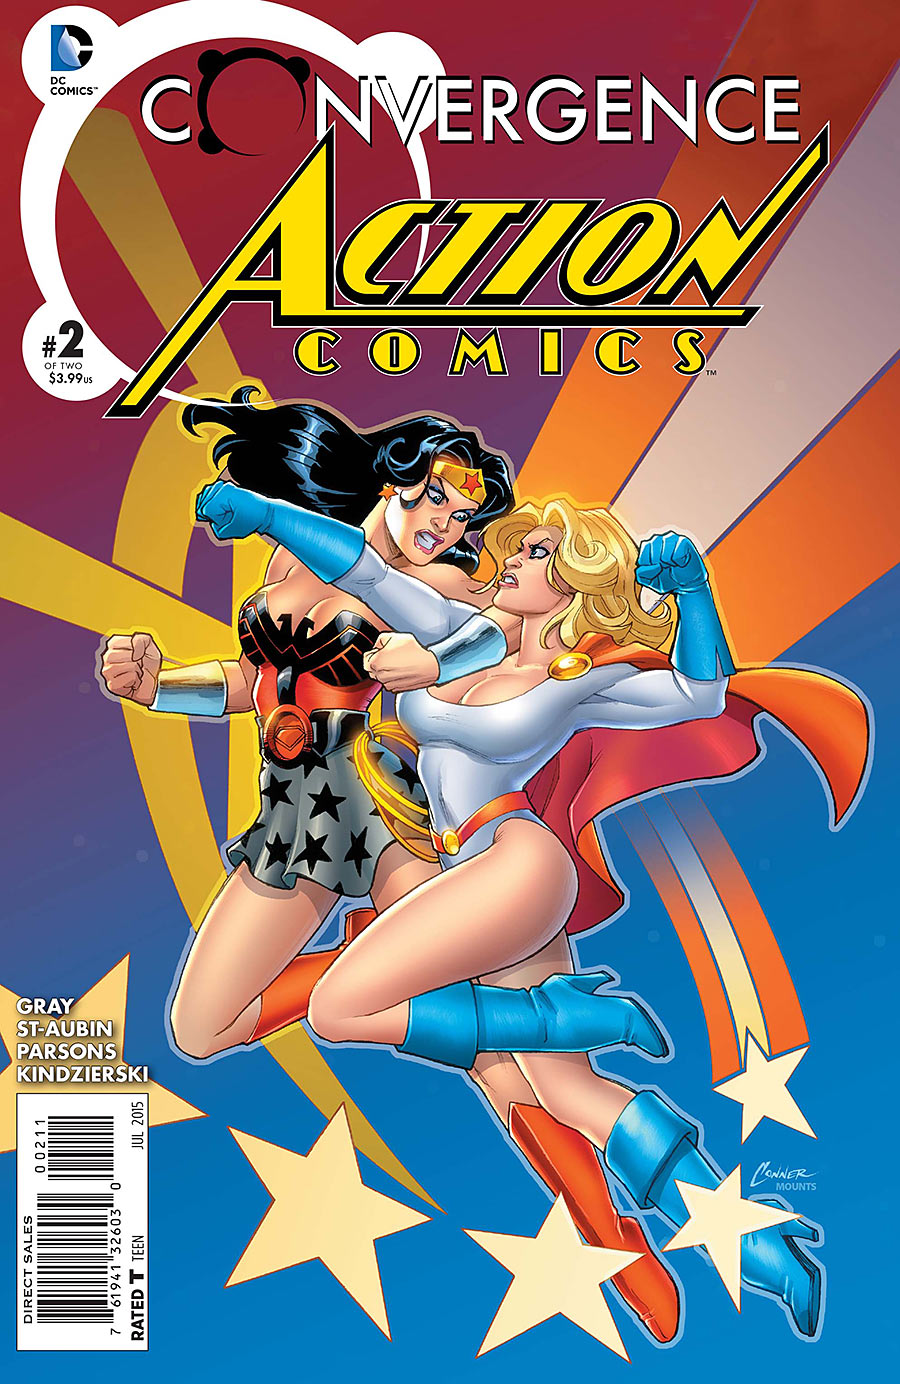 Convergence: Action Comics Vol. 1 #2